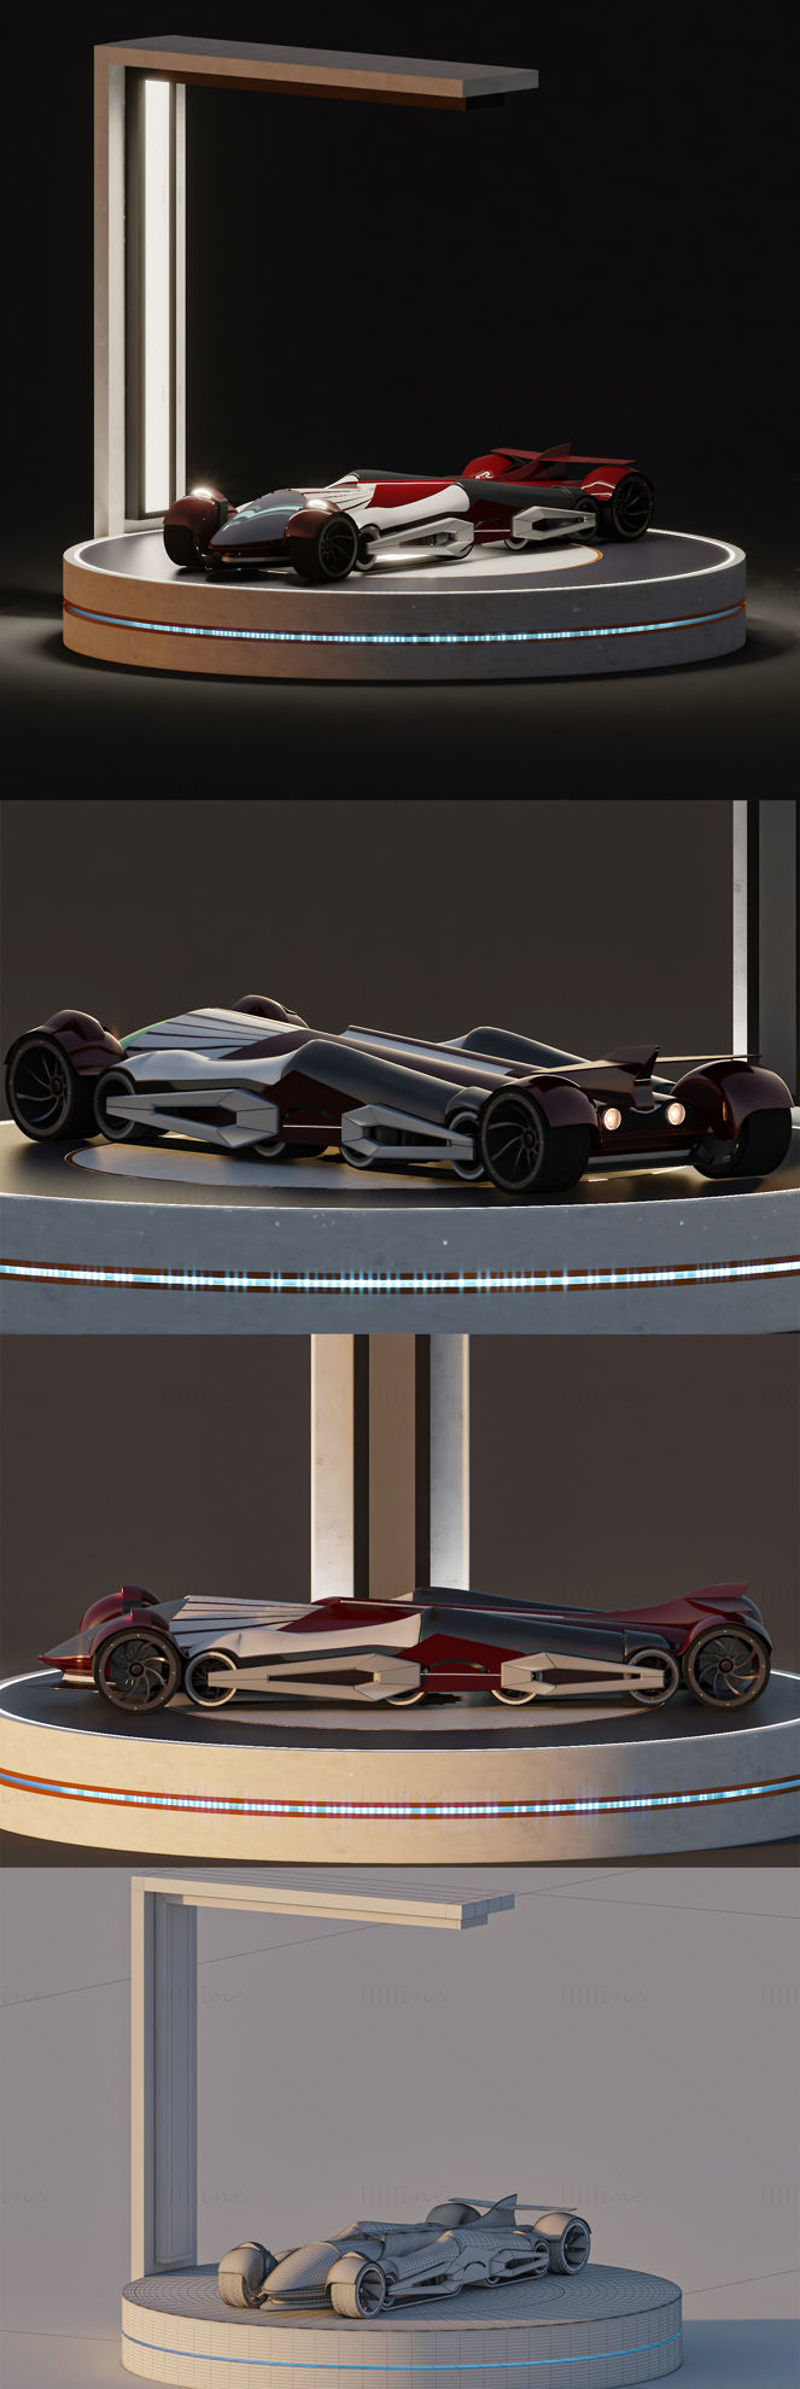 Концепт спортивного автомобиля + стенд 3D модели сцены